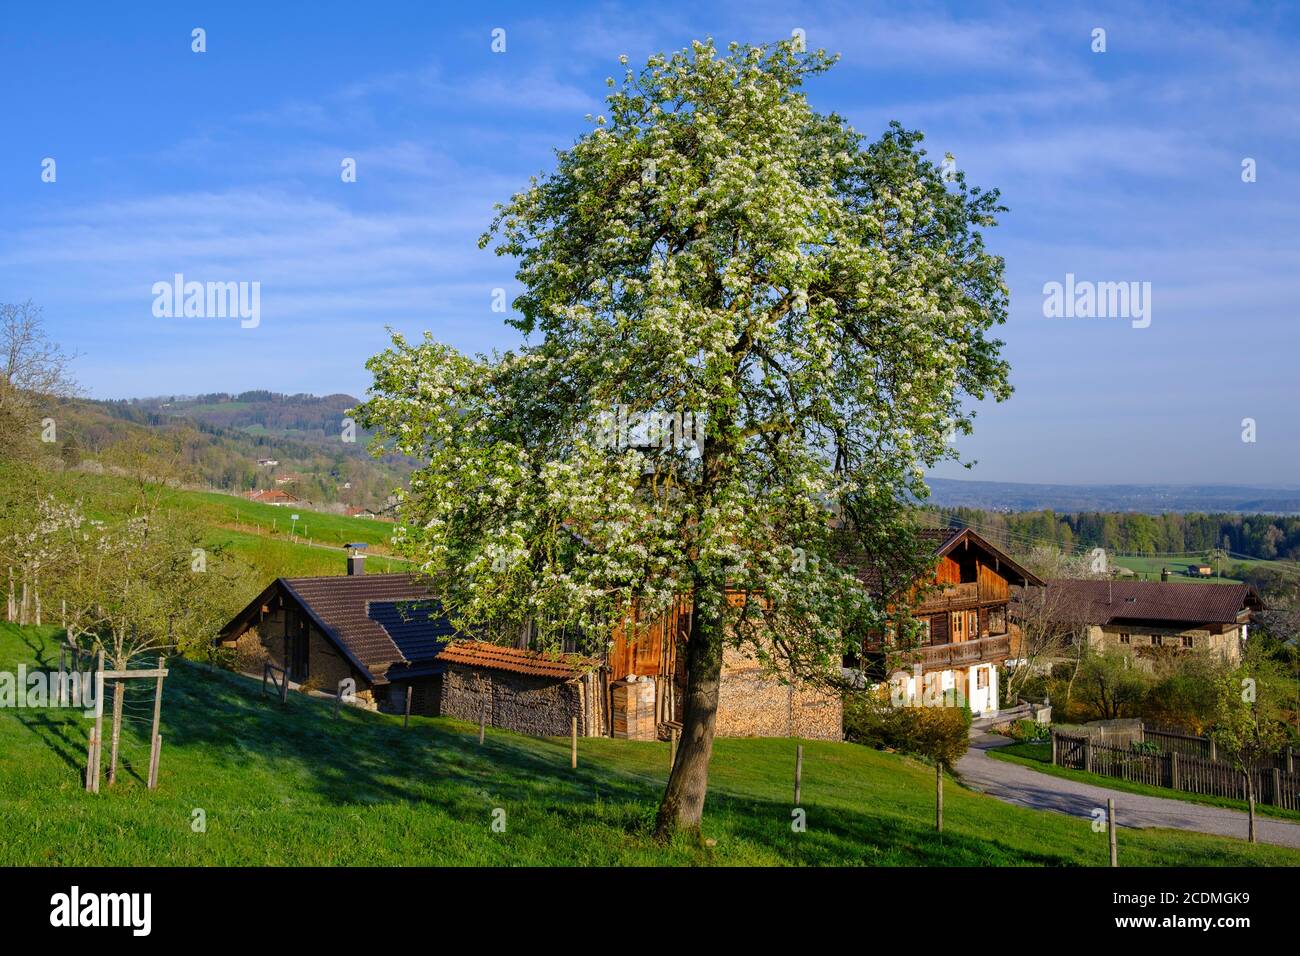 Blühender Birnenbaum vor einem Bauernhaus, Kutterling bei Bad Feilnbach, Oberbayern, Bayern, Deutschland Stockfoto